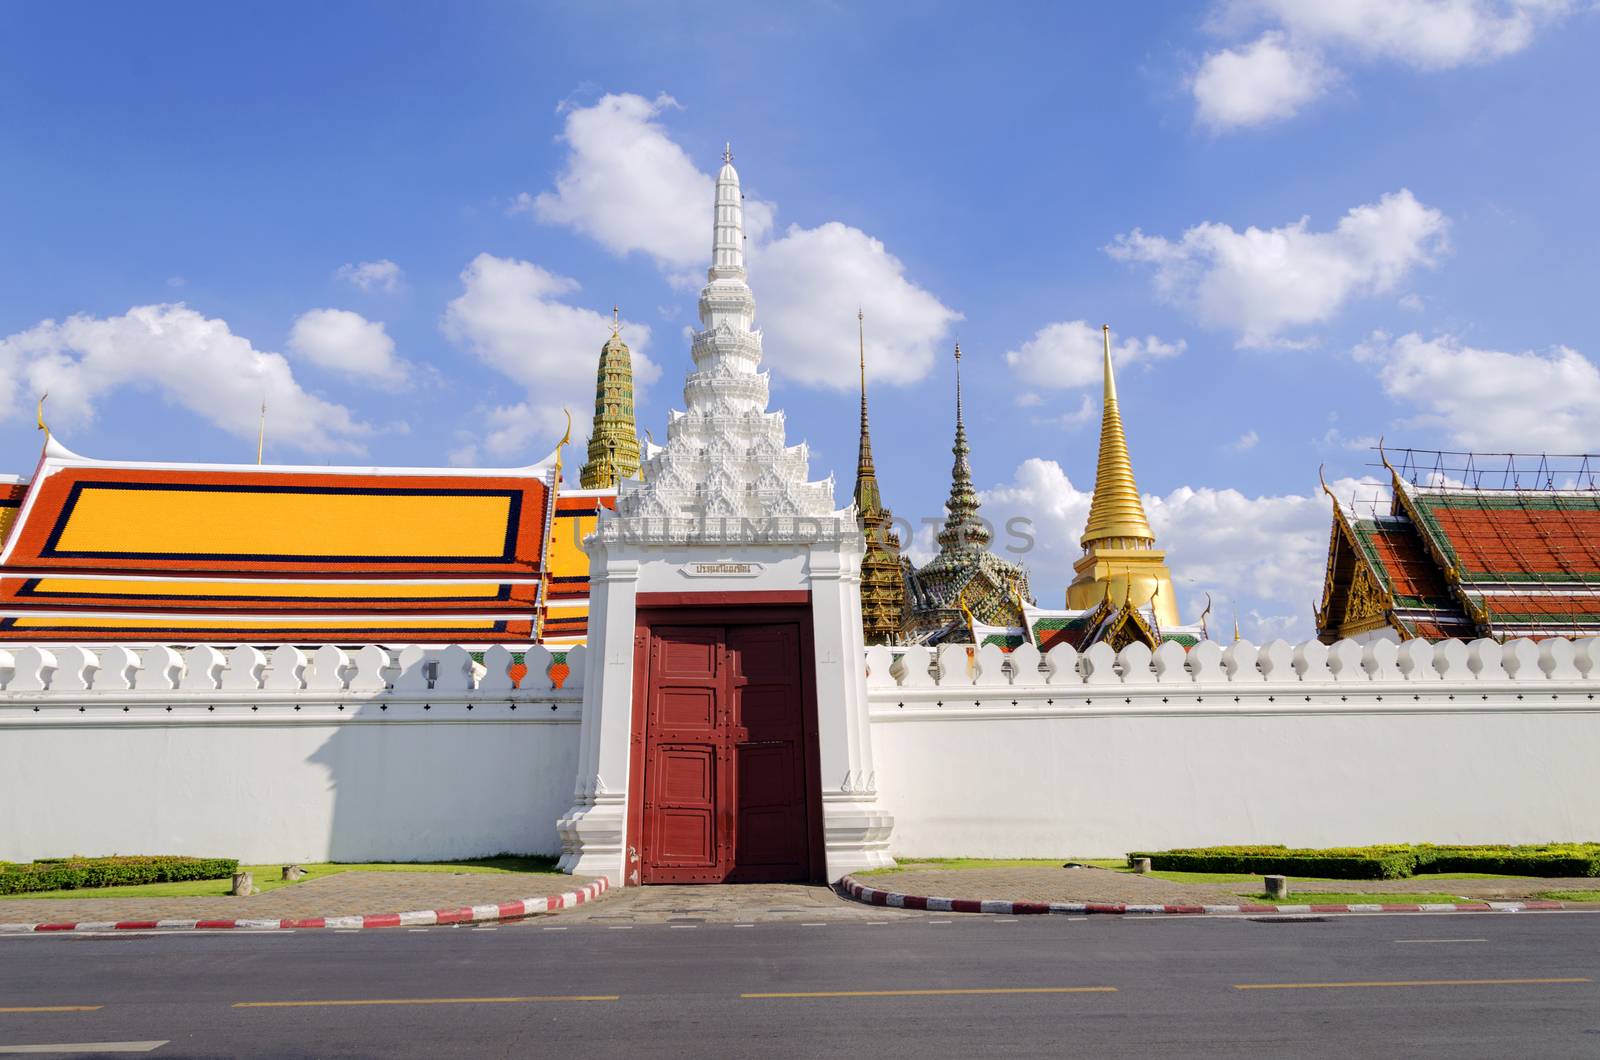 BANGKOK,THAILAND - JULY 3: Wat Phra Kaew, Grand Palace Wall Bangkok. View from the street near Wat Phra Kaew, July 3, 2014 in Bangkok,Thailand